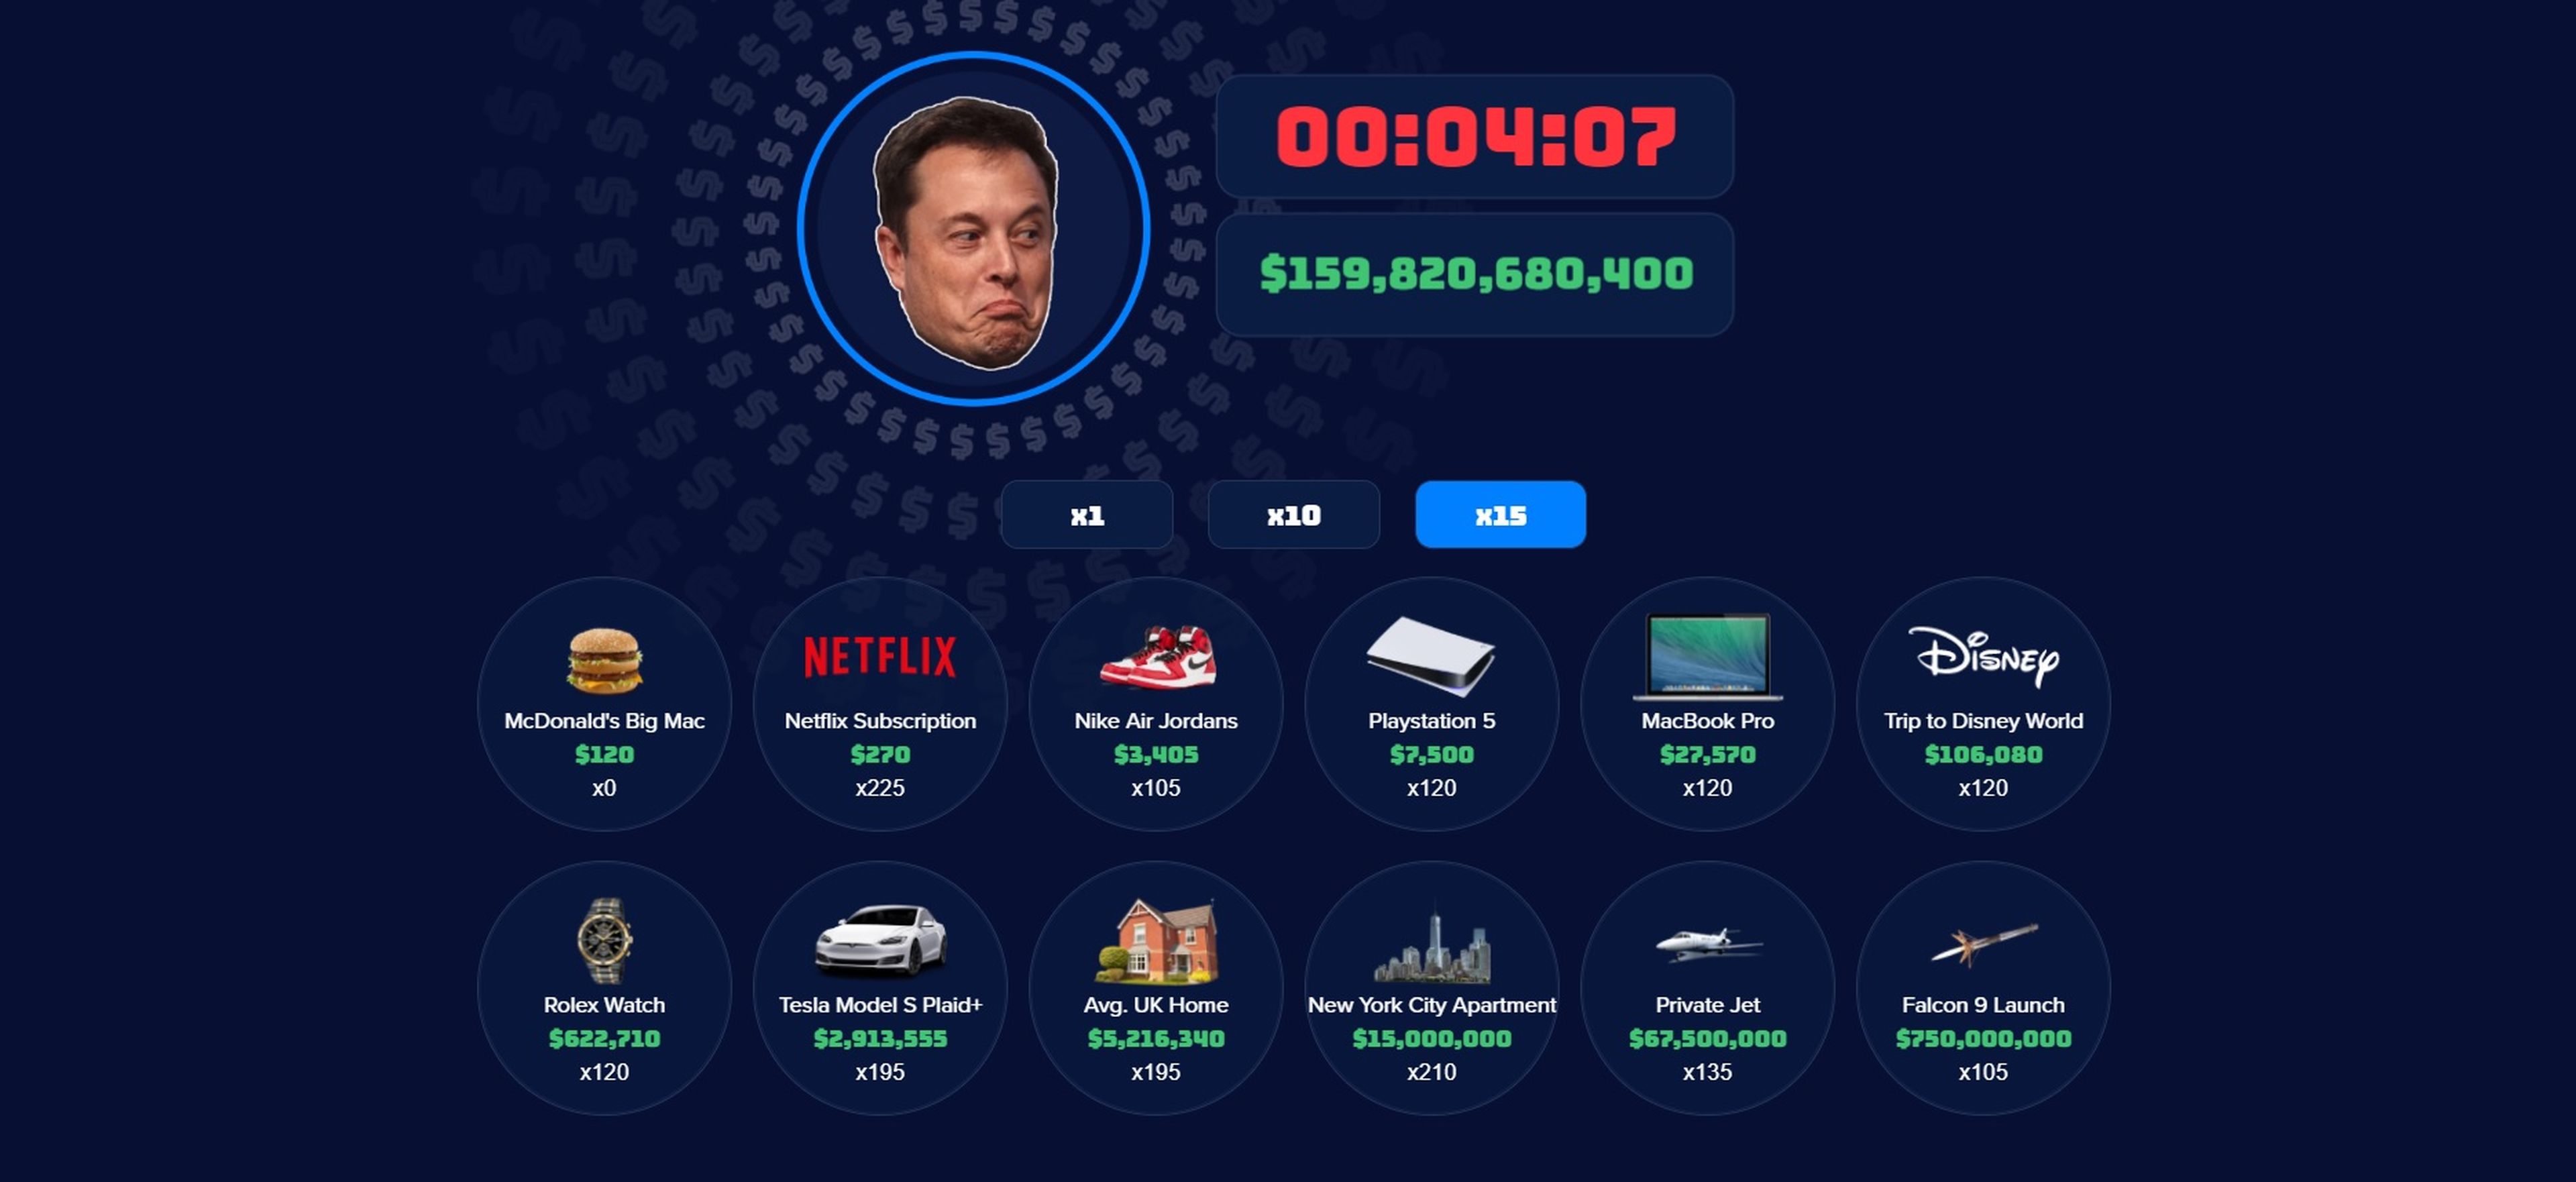 Imagen del juego que te permite gastar la fortuna de Elon Musk en 30 segundos.